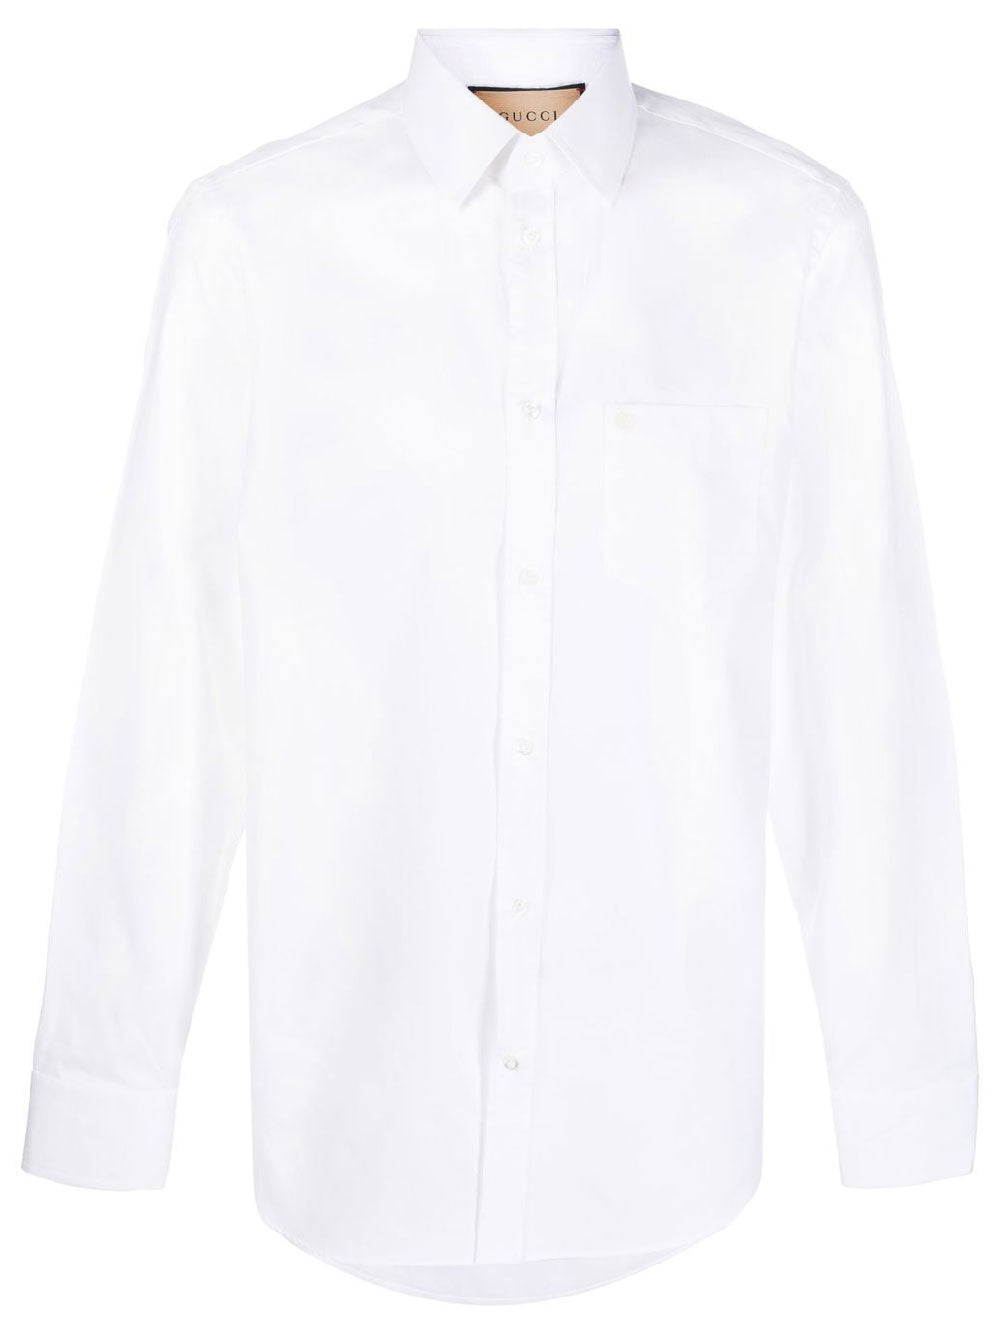 Chest pocket button-up shirt